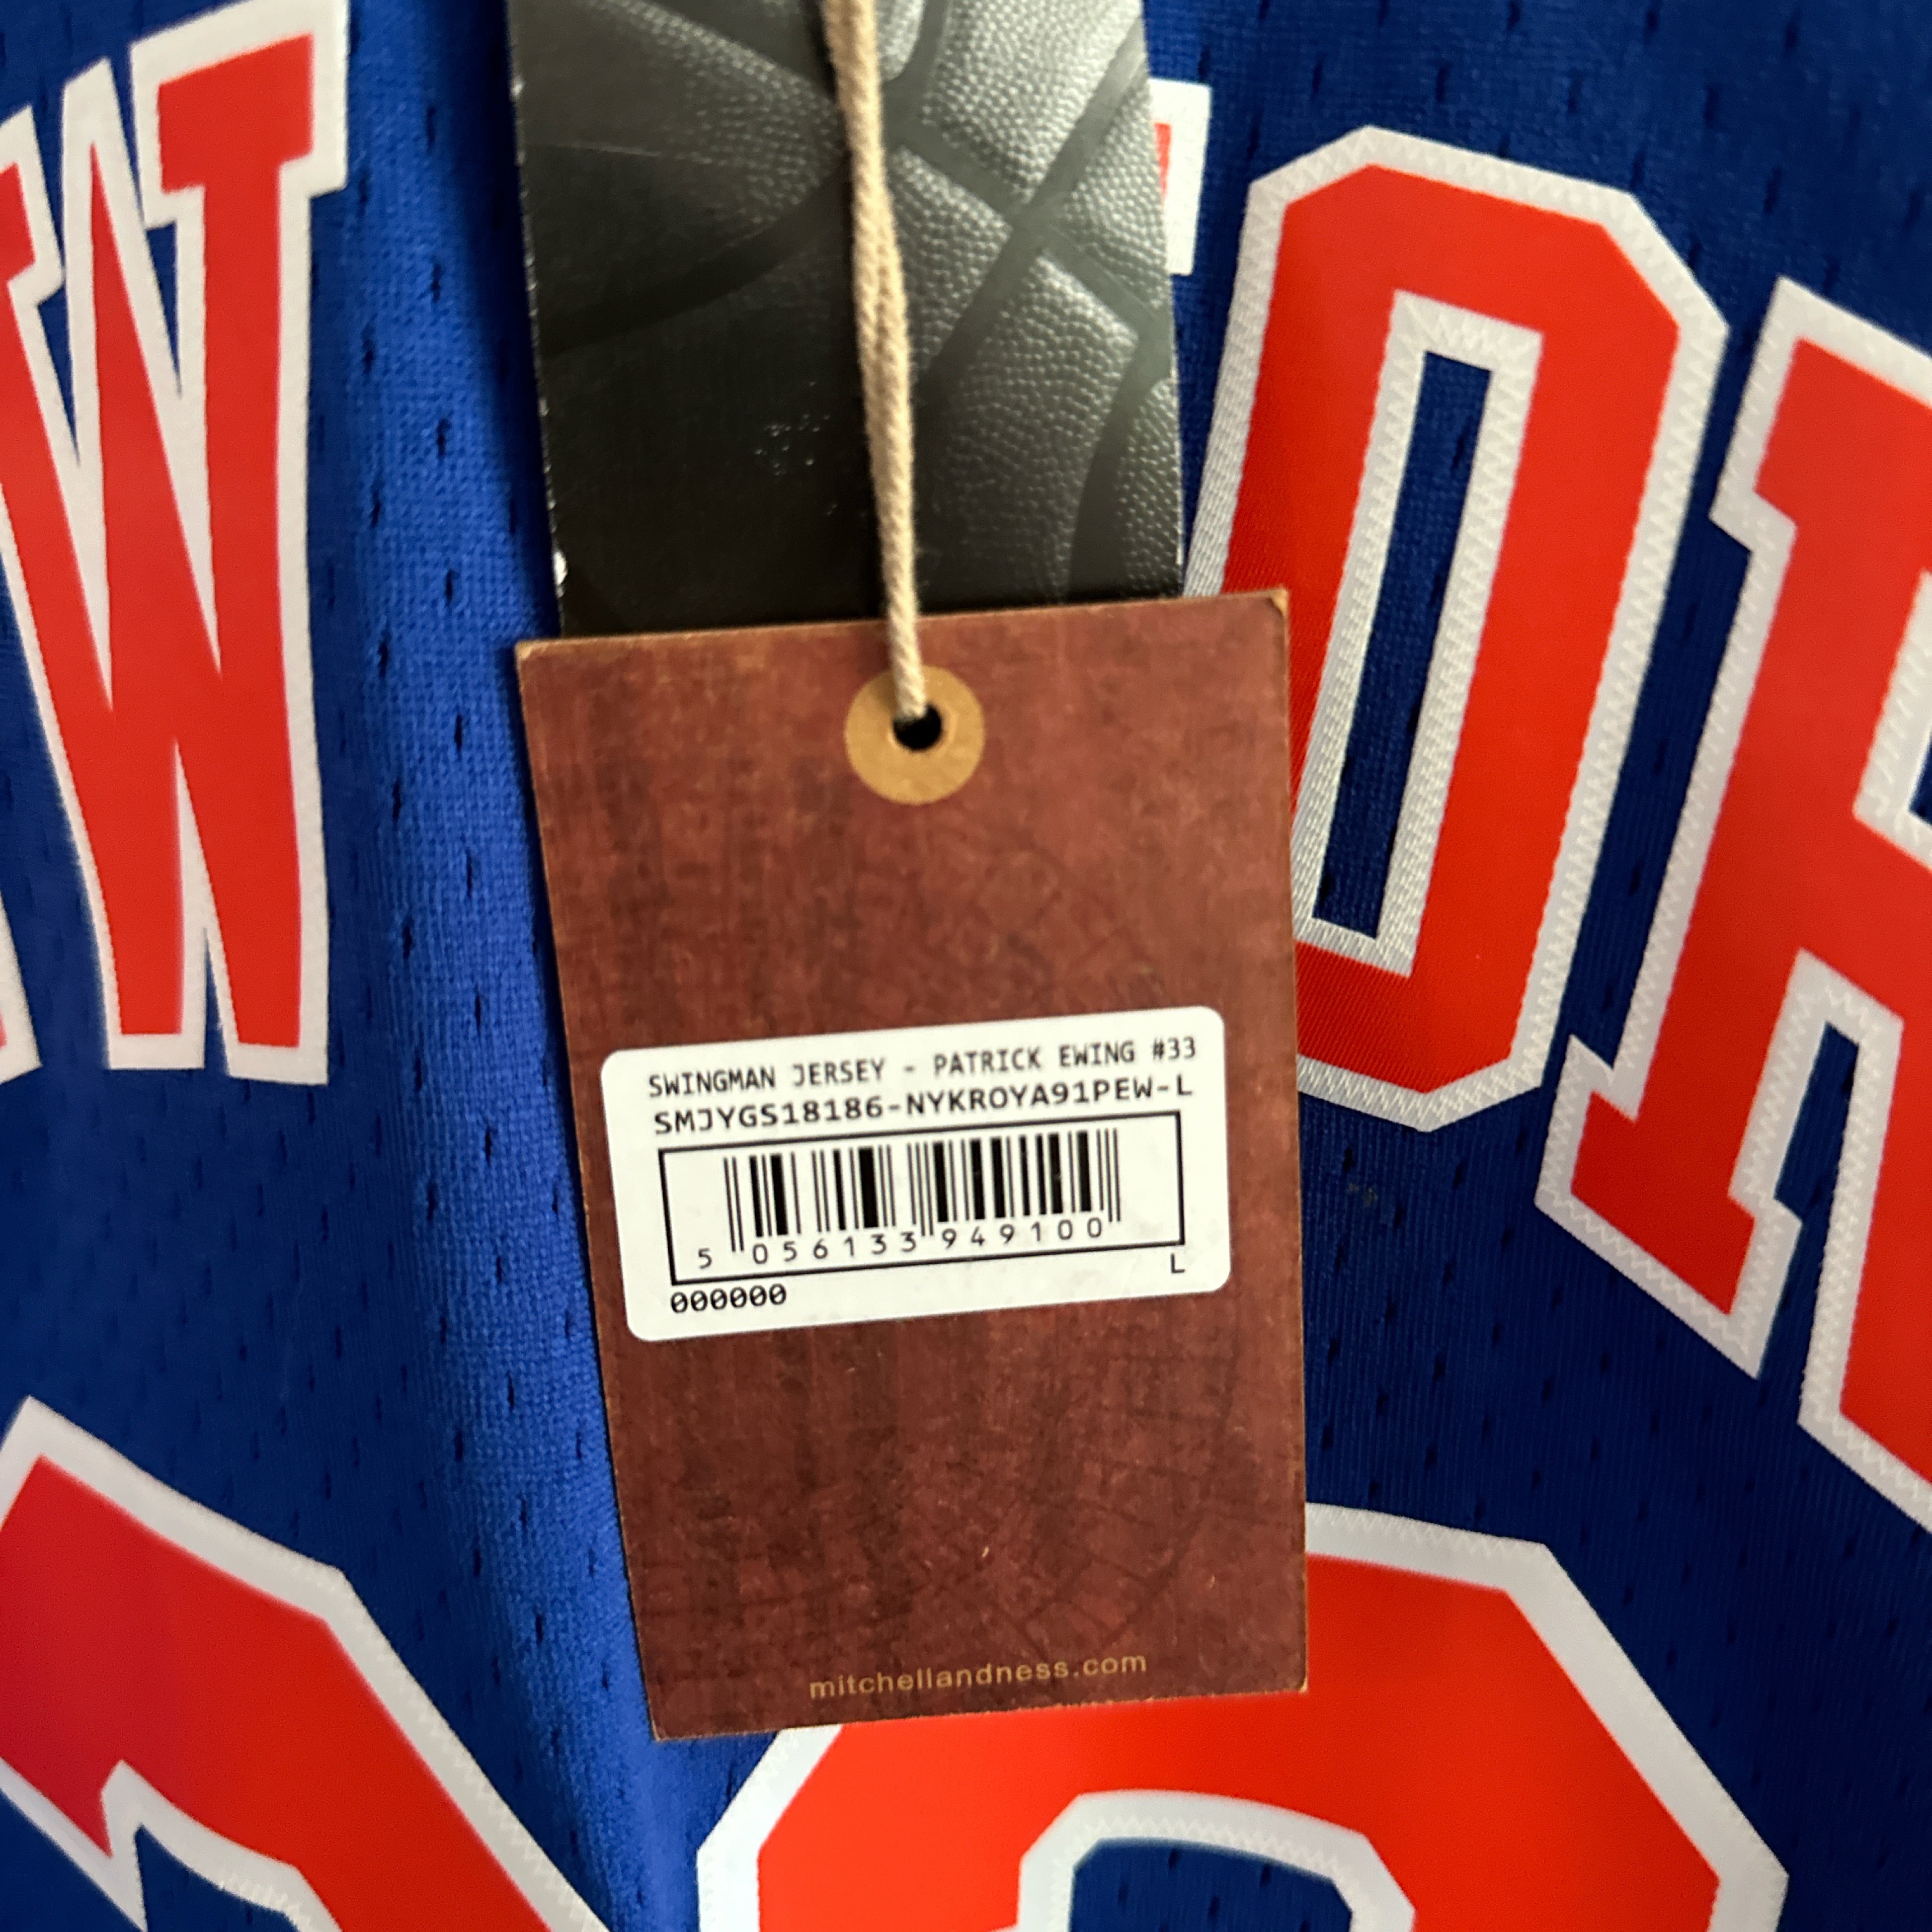 New York Knicks Patrick Ewing Mitchell & Ness jersey - Large